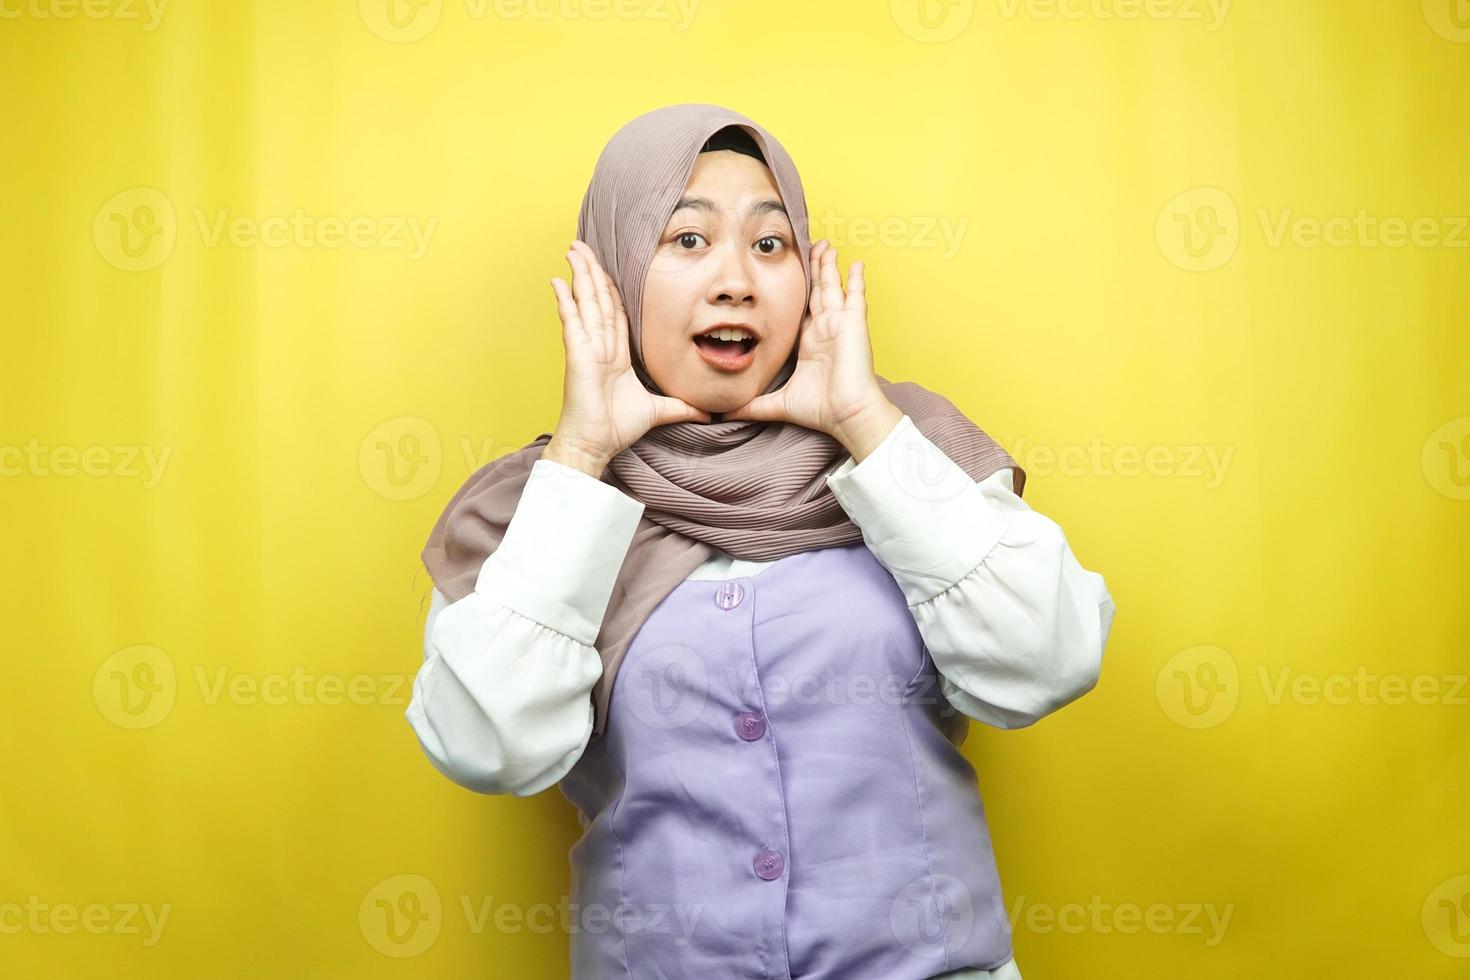 belle jeune femme musulmane asiatique choquée, surprise, expression wow, avec les mains tenant la joue, isolée sur fond jaune photo